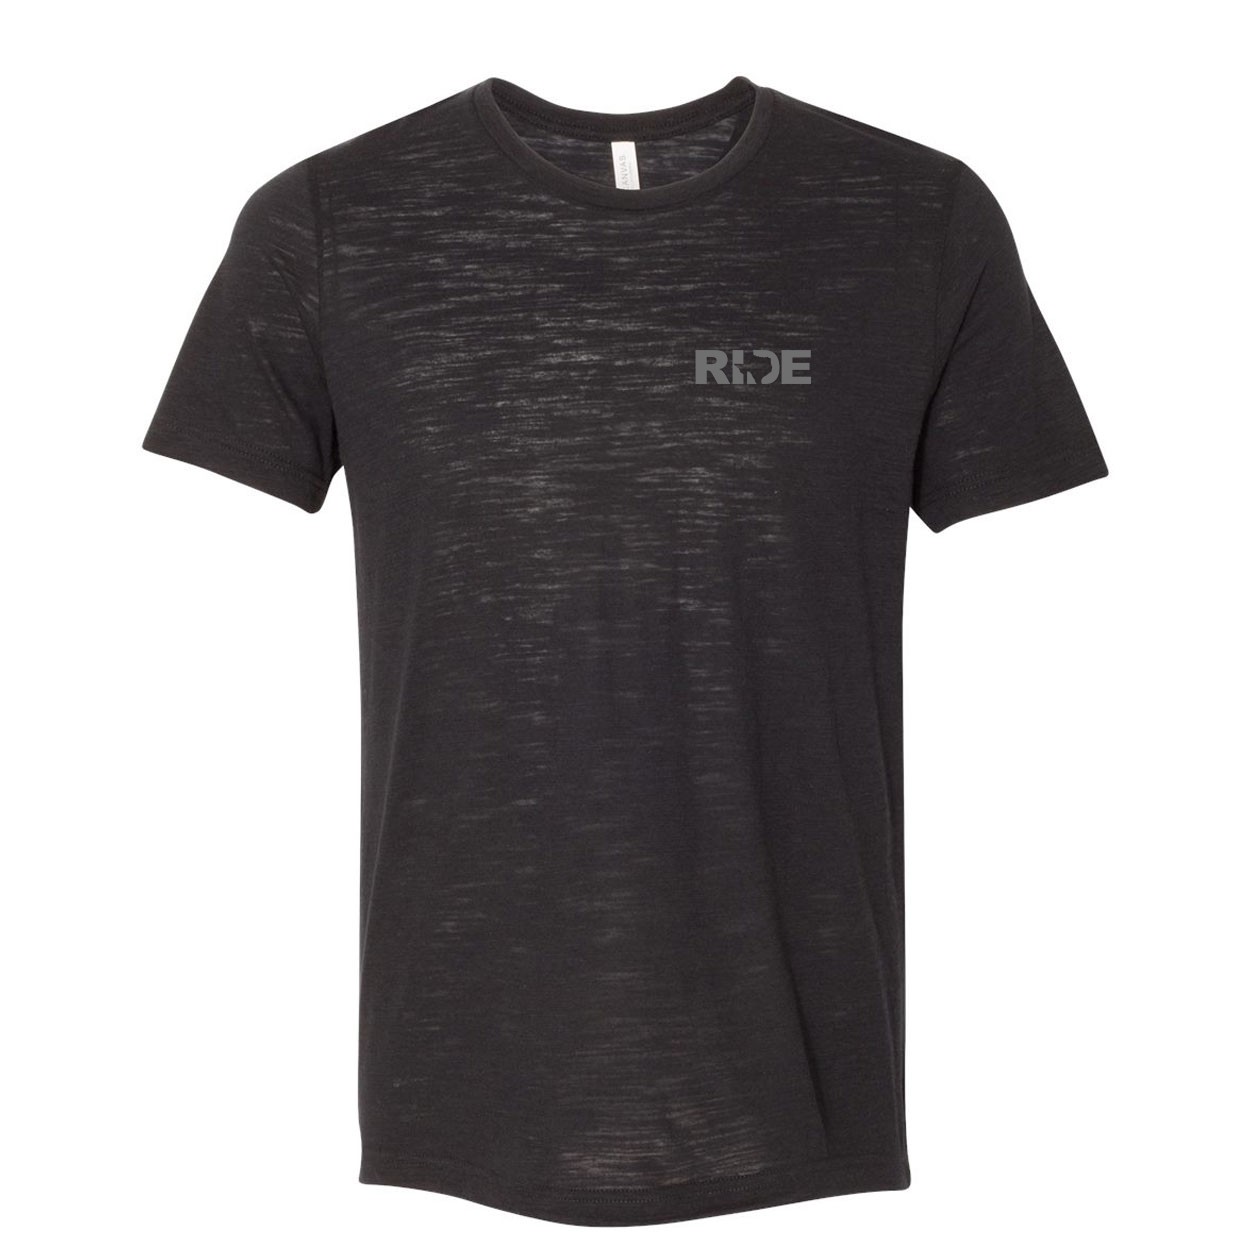 Ride Texas Night Out Unisex Premium Texture T-Shirt Solid Black Slub (Gray Logo)